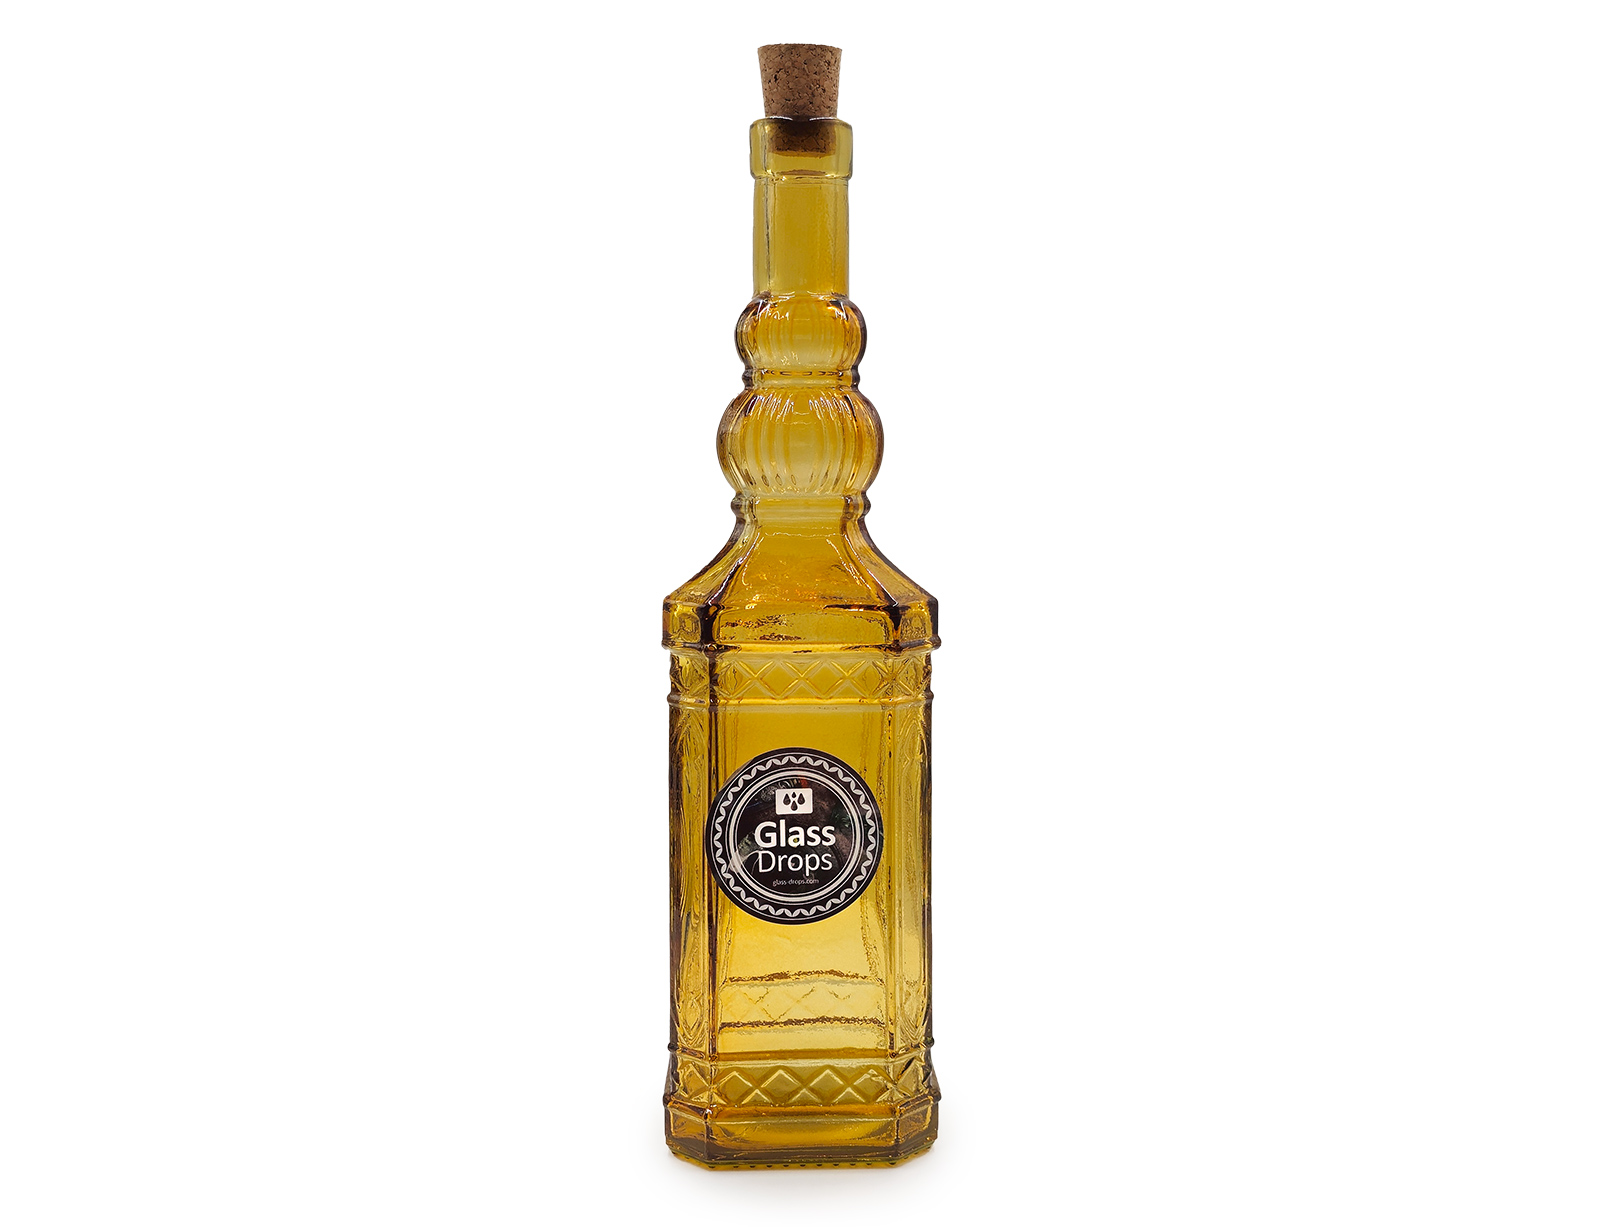 Εικόνα Διακοσμητικό Μπουκάλι με πώμα Glass Drops Miguelete (5033DB411) Aπό 100% ανακυκλωμένο γυαλί, Xωρητικότητας 700ml, Διαστάσεων Ø 8 x Υ 30 cm, Yellow Gold
